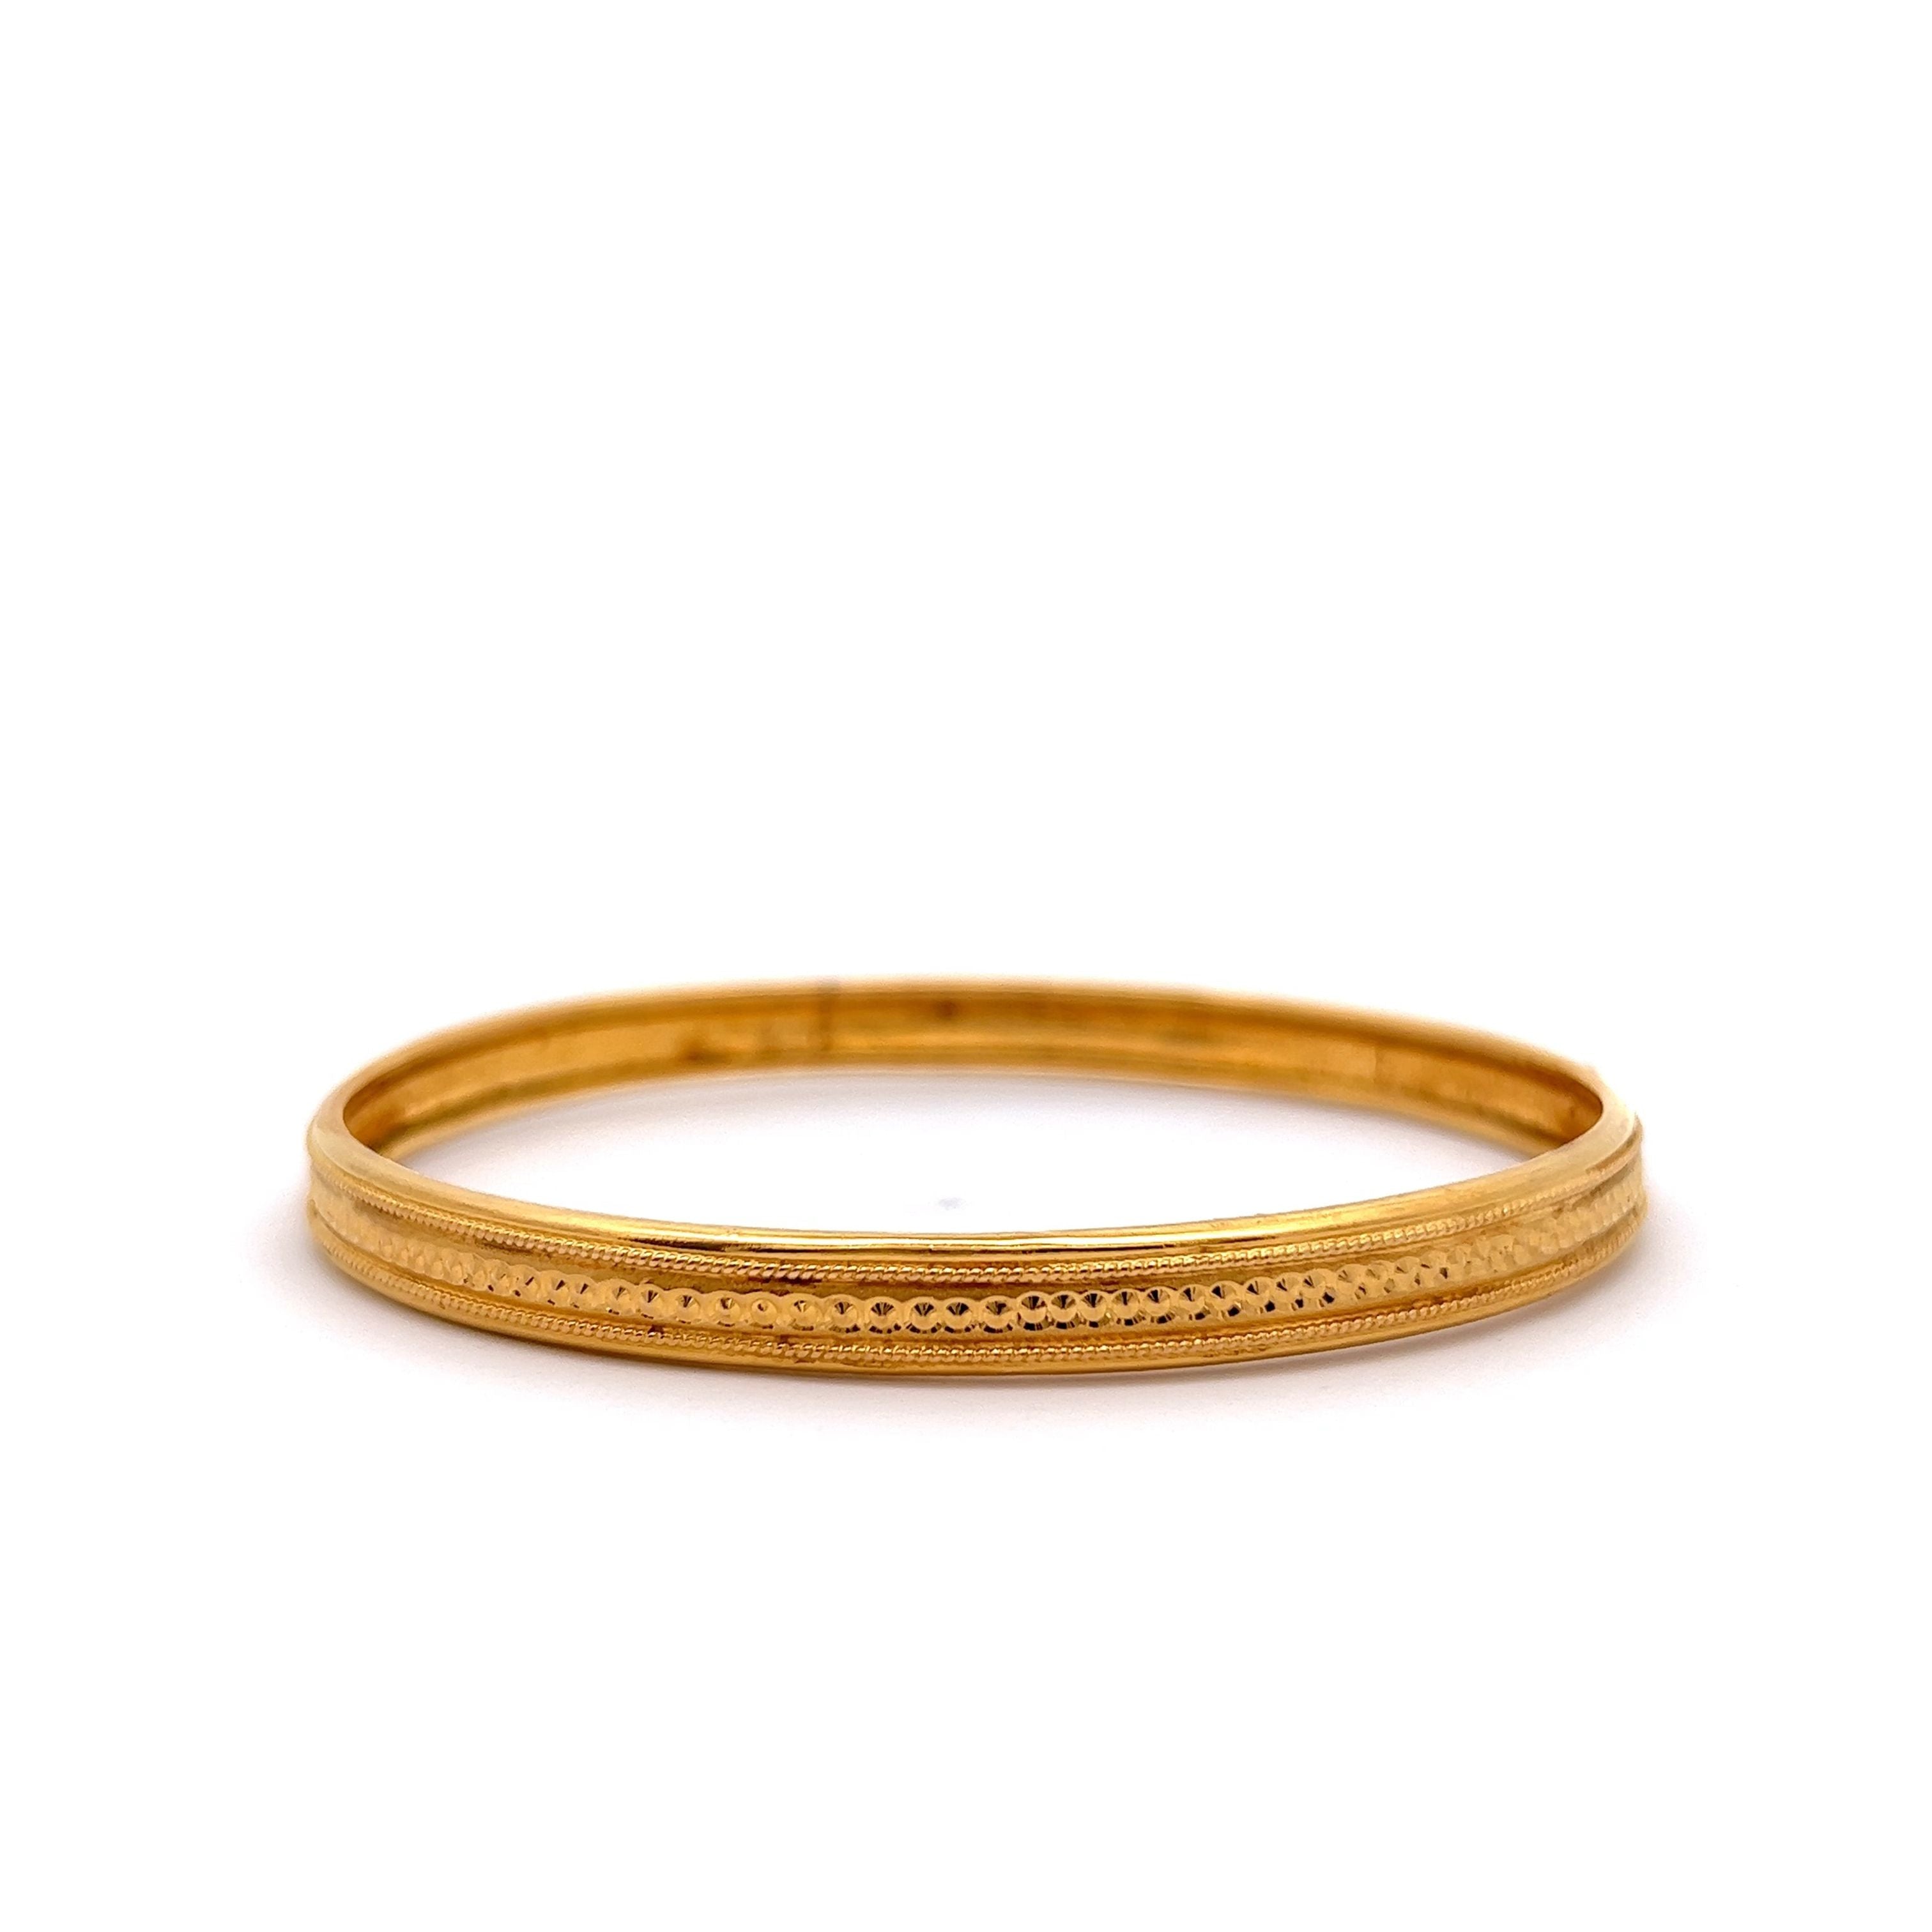 Buy quality Elegant Gold Bracelet For Gents 22Carat in Pune